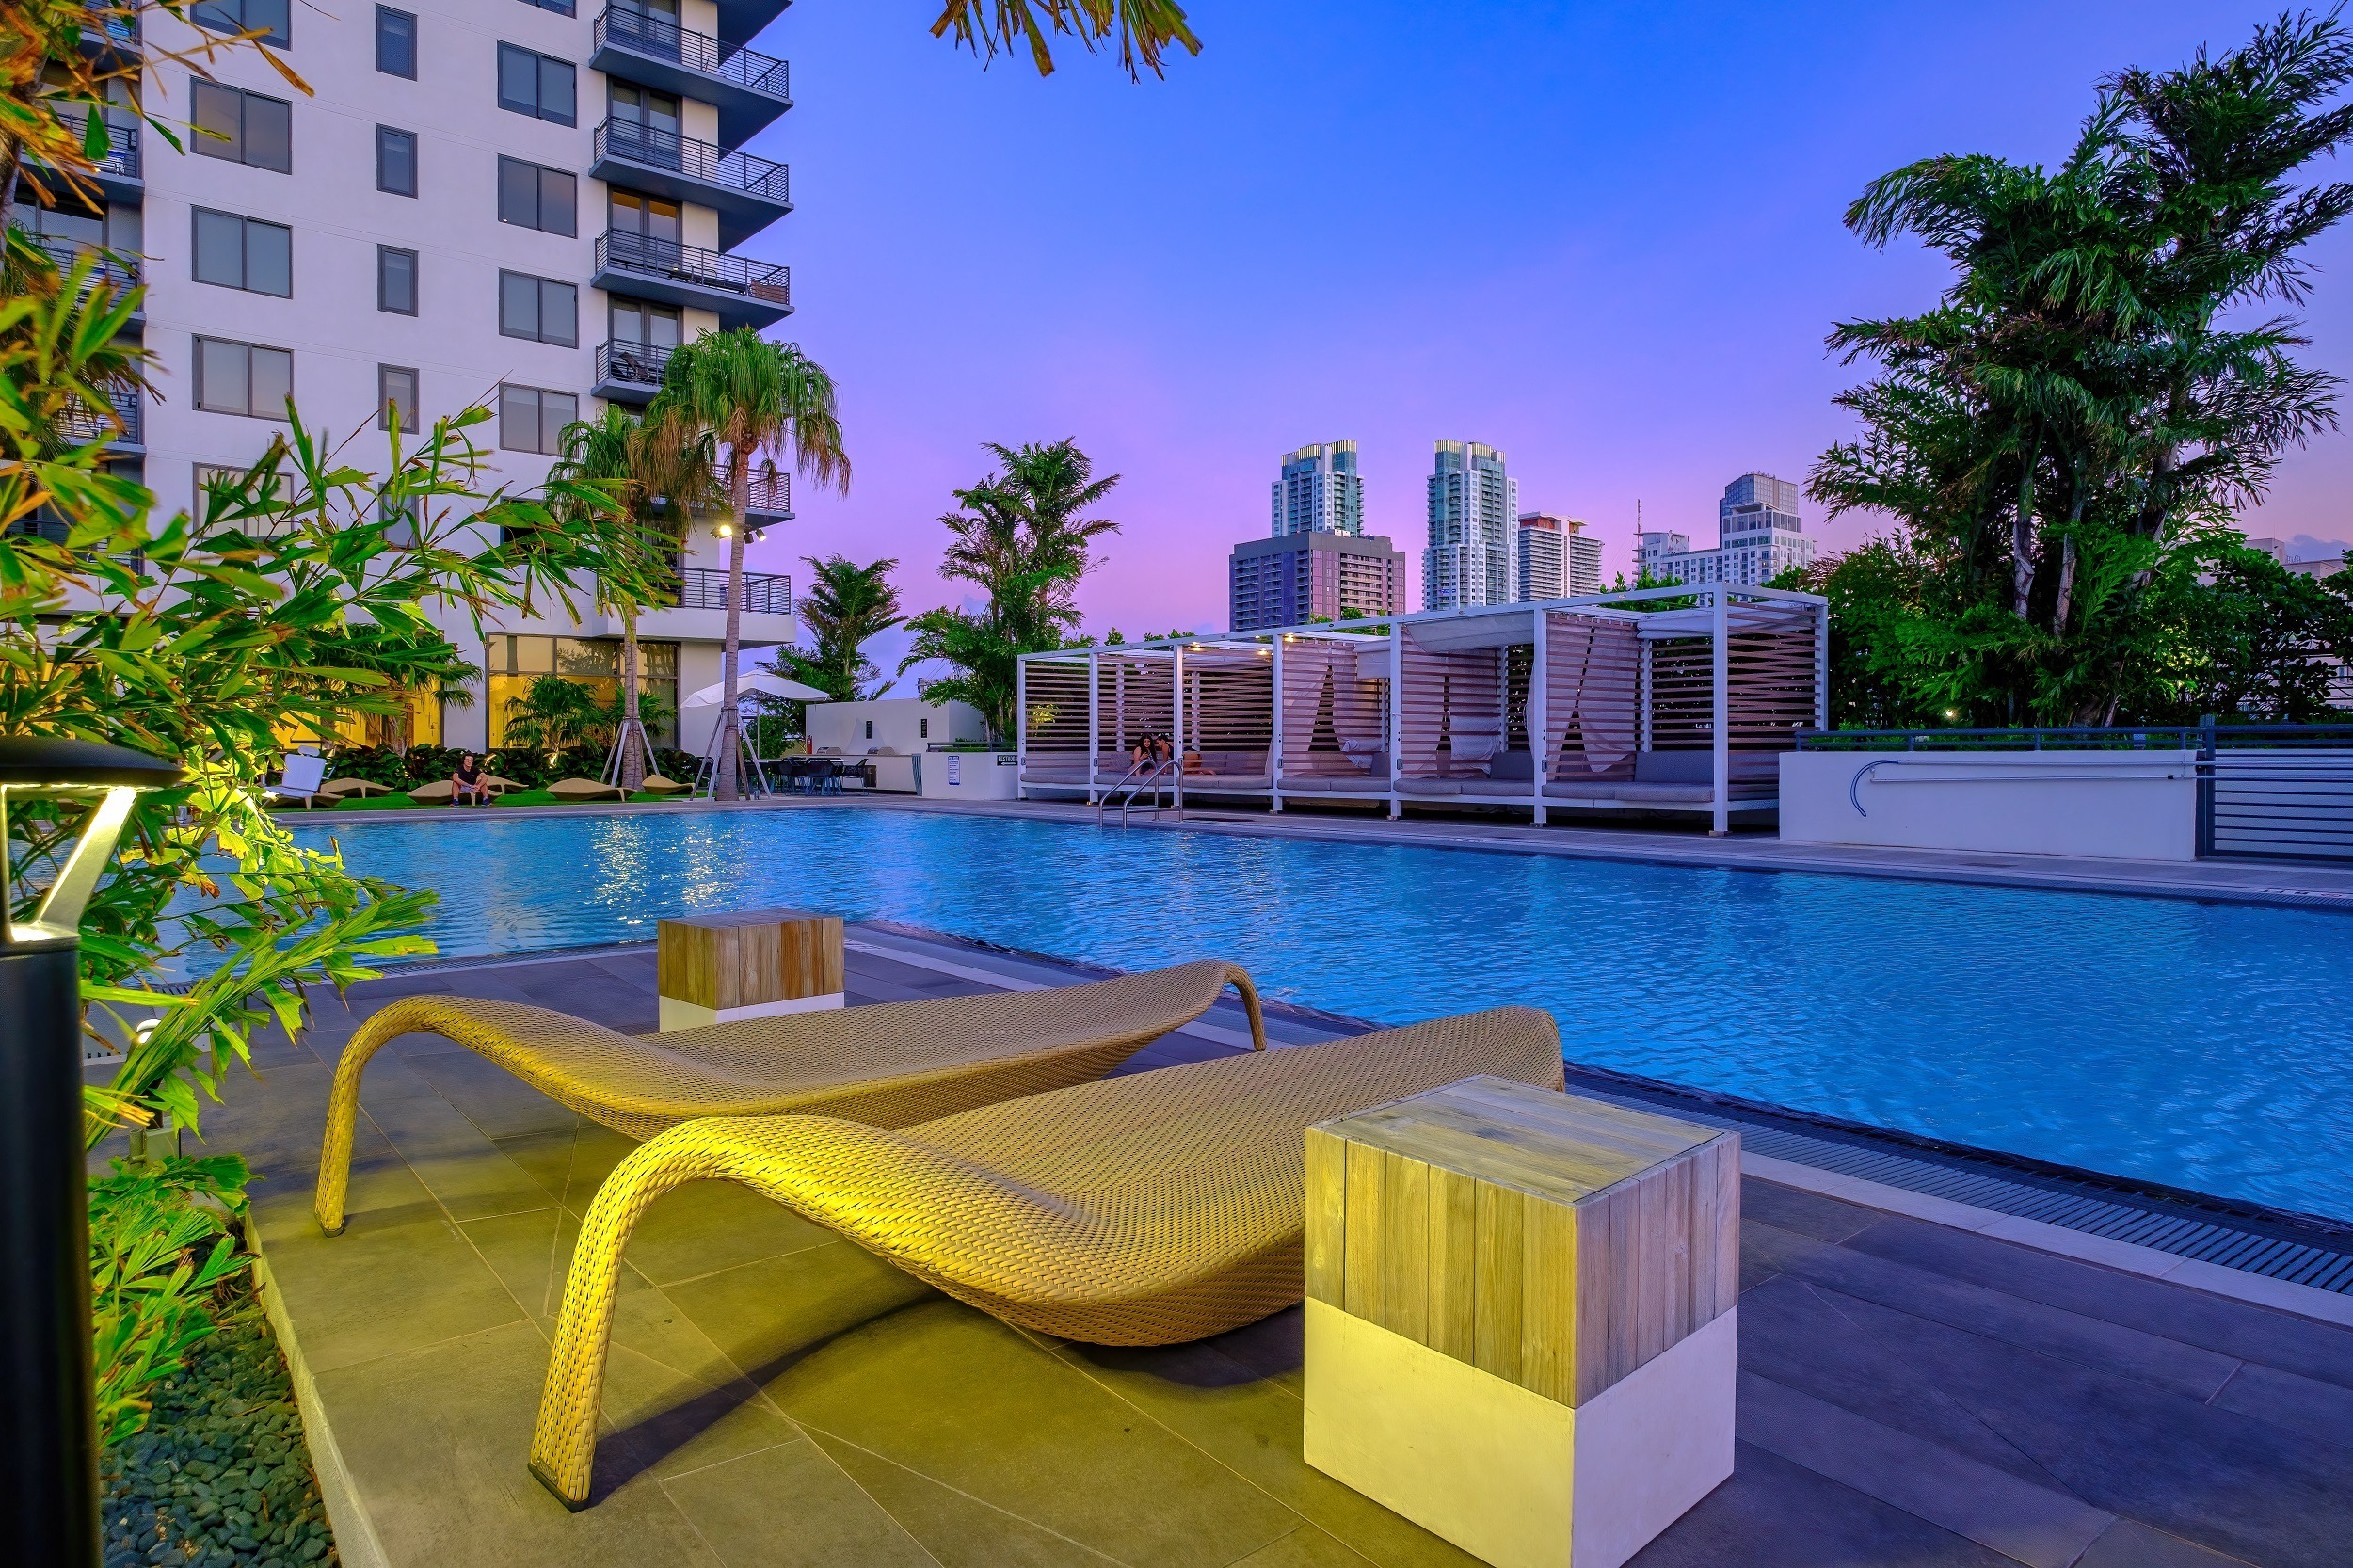 Caoba Miami Worldcenter Apartments in Miami, FL